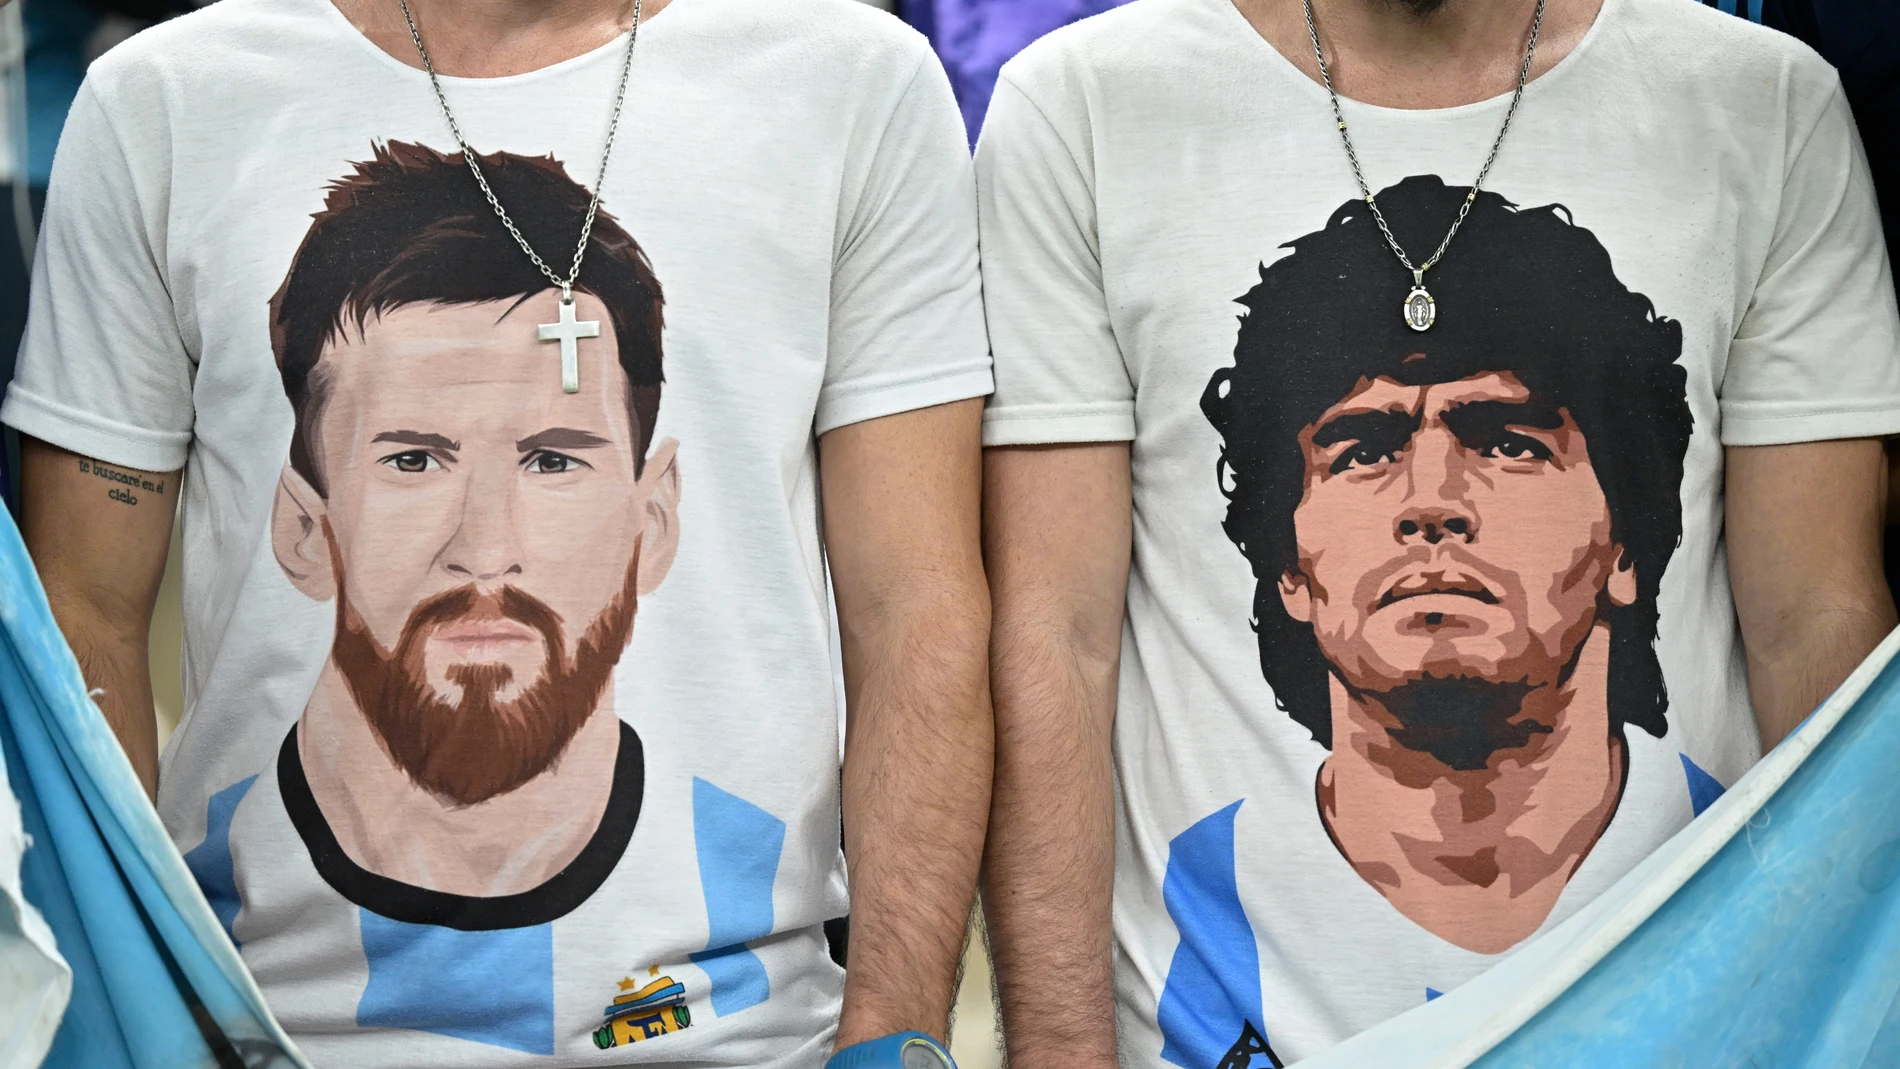 Aficionados de Argentina en el Mundial de Qatar 2022 con camisetas de Messi y Maradona